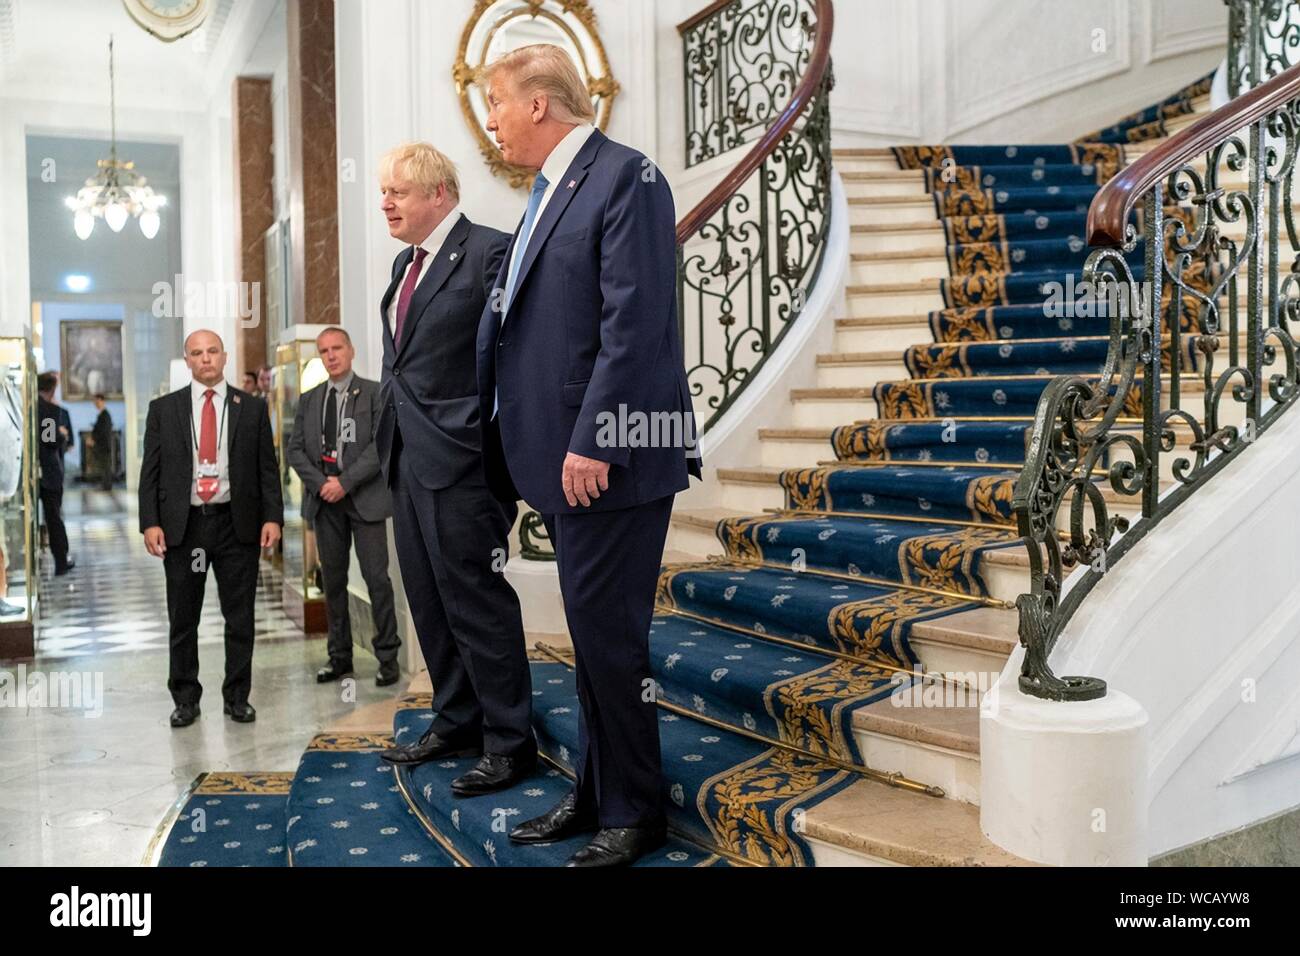 Le Président américain Donald Trump, droit, se dresse avec le Premier ministre britannique Boris Johnson à l'issue d'une réunion en marge du Sommet du G7 à l'Hôtel du Palais Biarritz 25 août 2019 à Biarritz, France. Banque D'Images